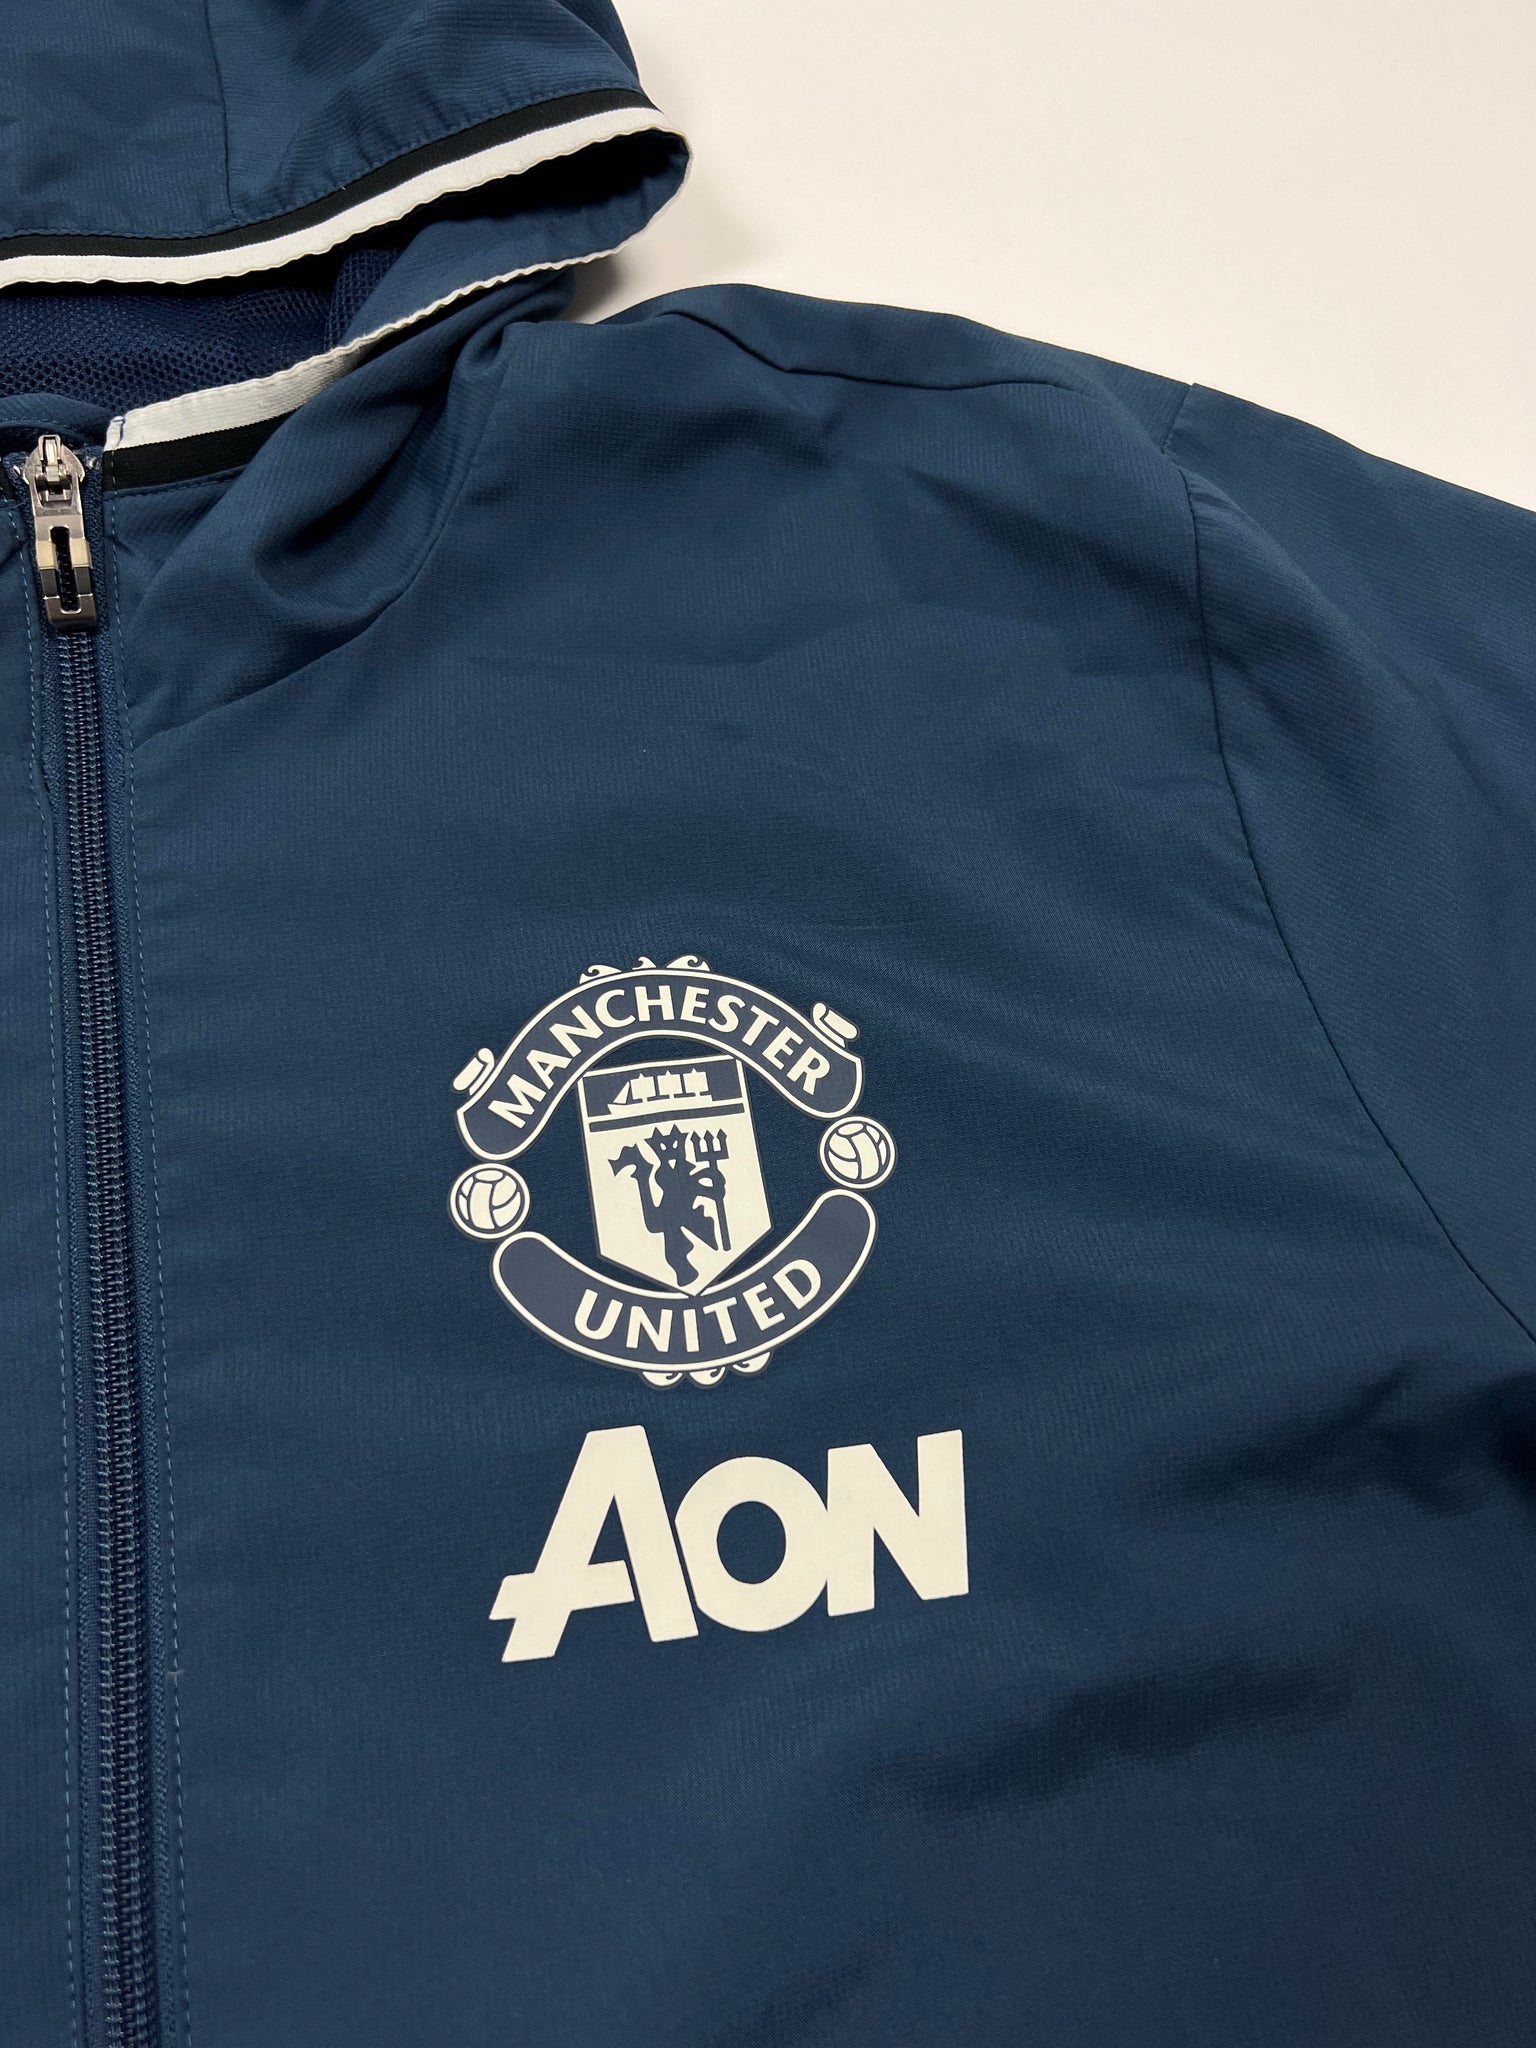 Adidas Manchester United Track Jacket (S)